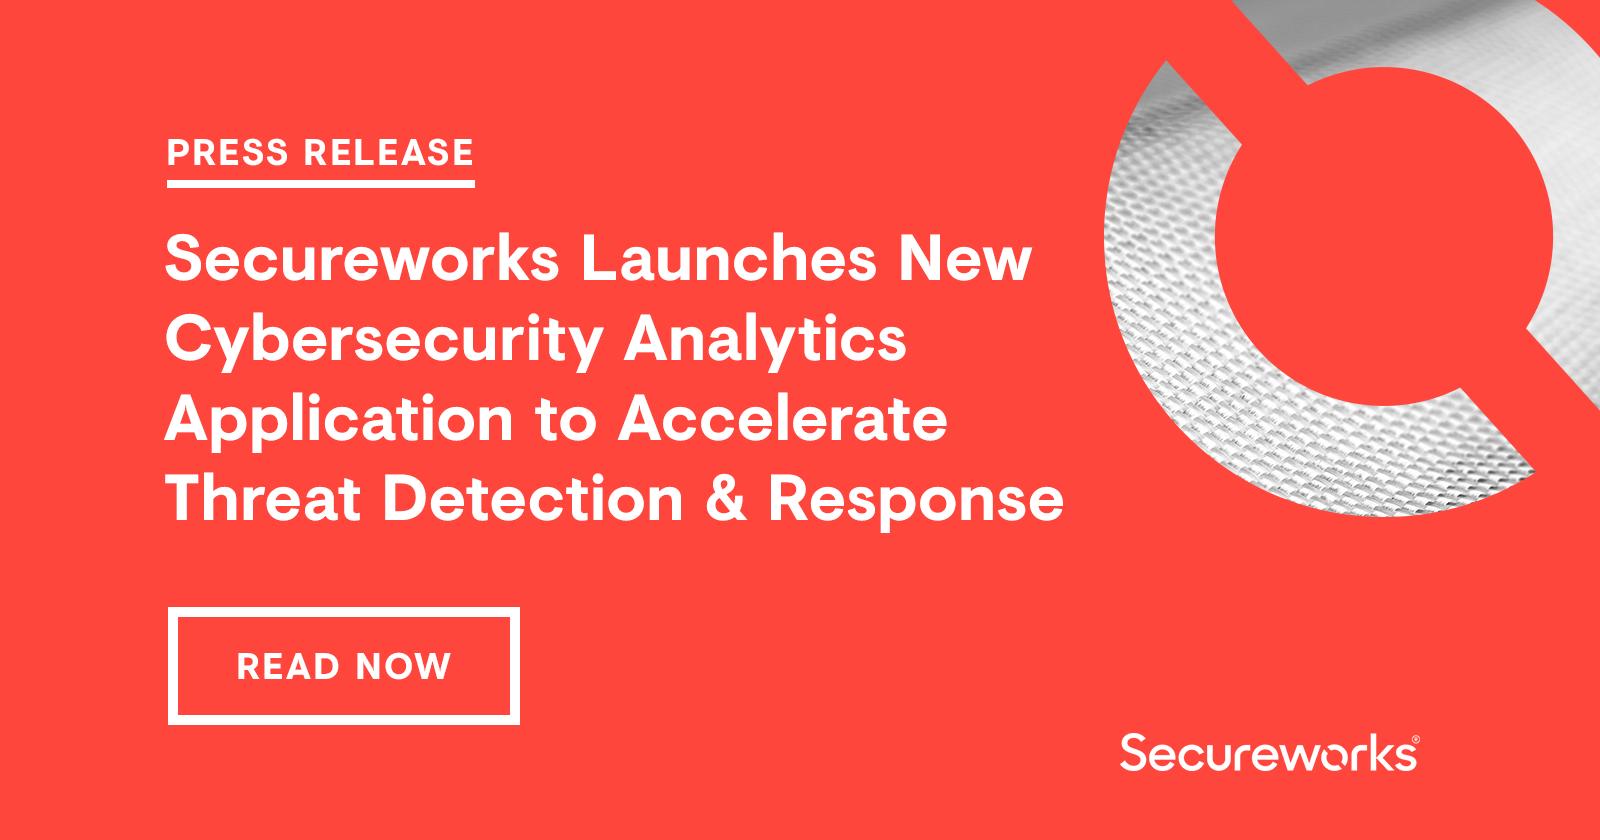 توییتر \ Secureworks در توییتر: «JUST ANNOUNCED: We've launched Red Cloak  Threat Detection & Response, our first software-based #security  analytics application — get the details here: /1fvYMY5P3b #SaaS  #DellTechWorld  ...